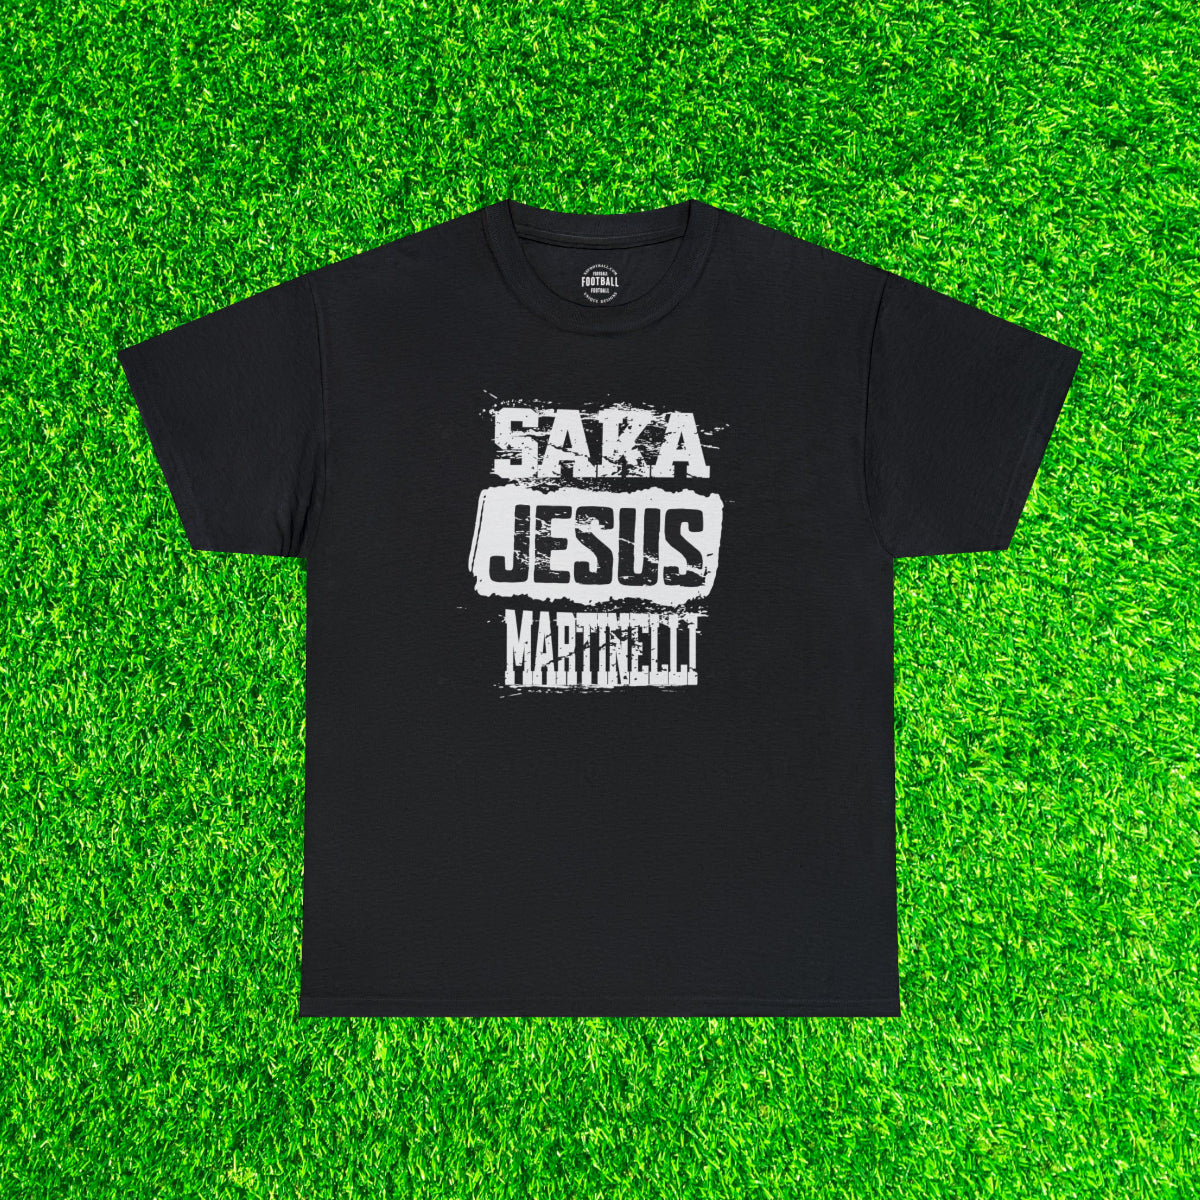 Arsenal - Martinelli/Jesus/Saka